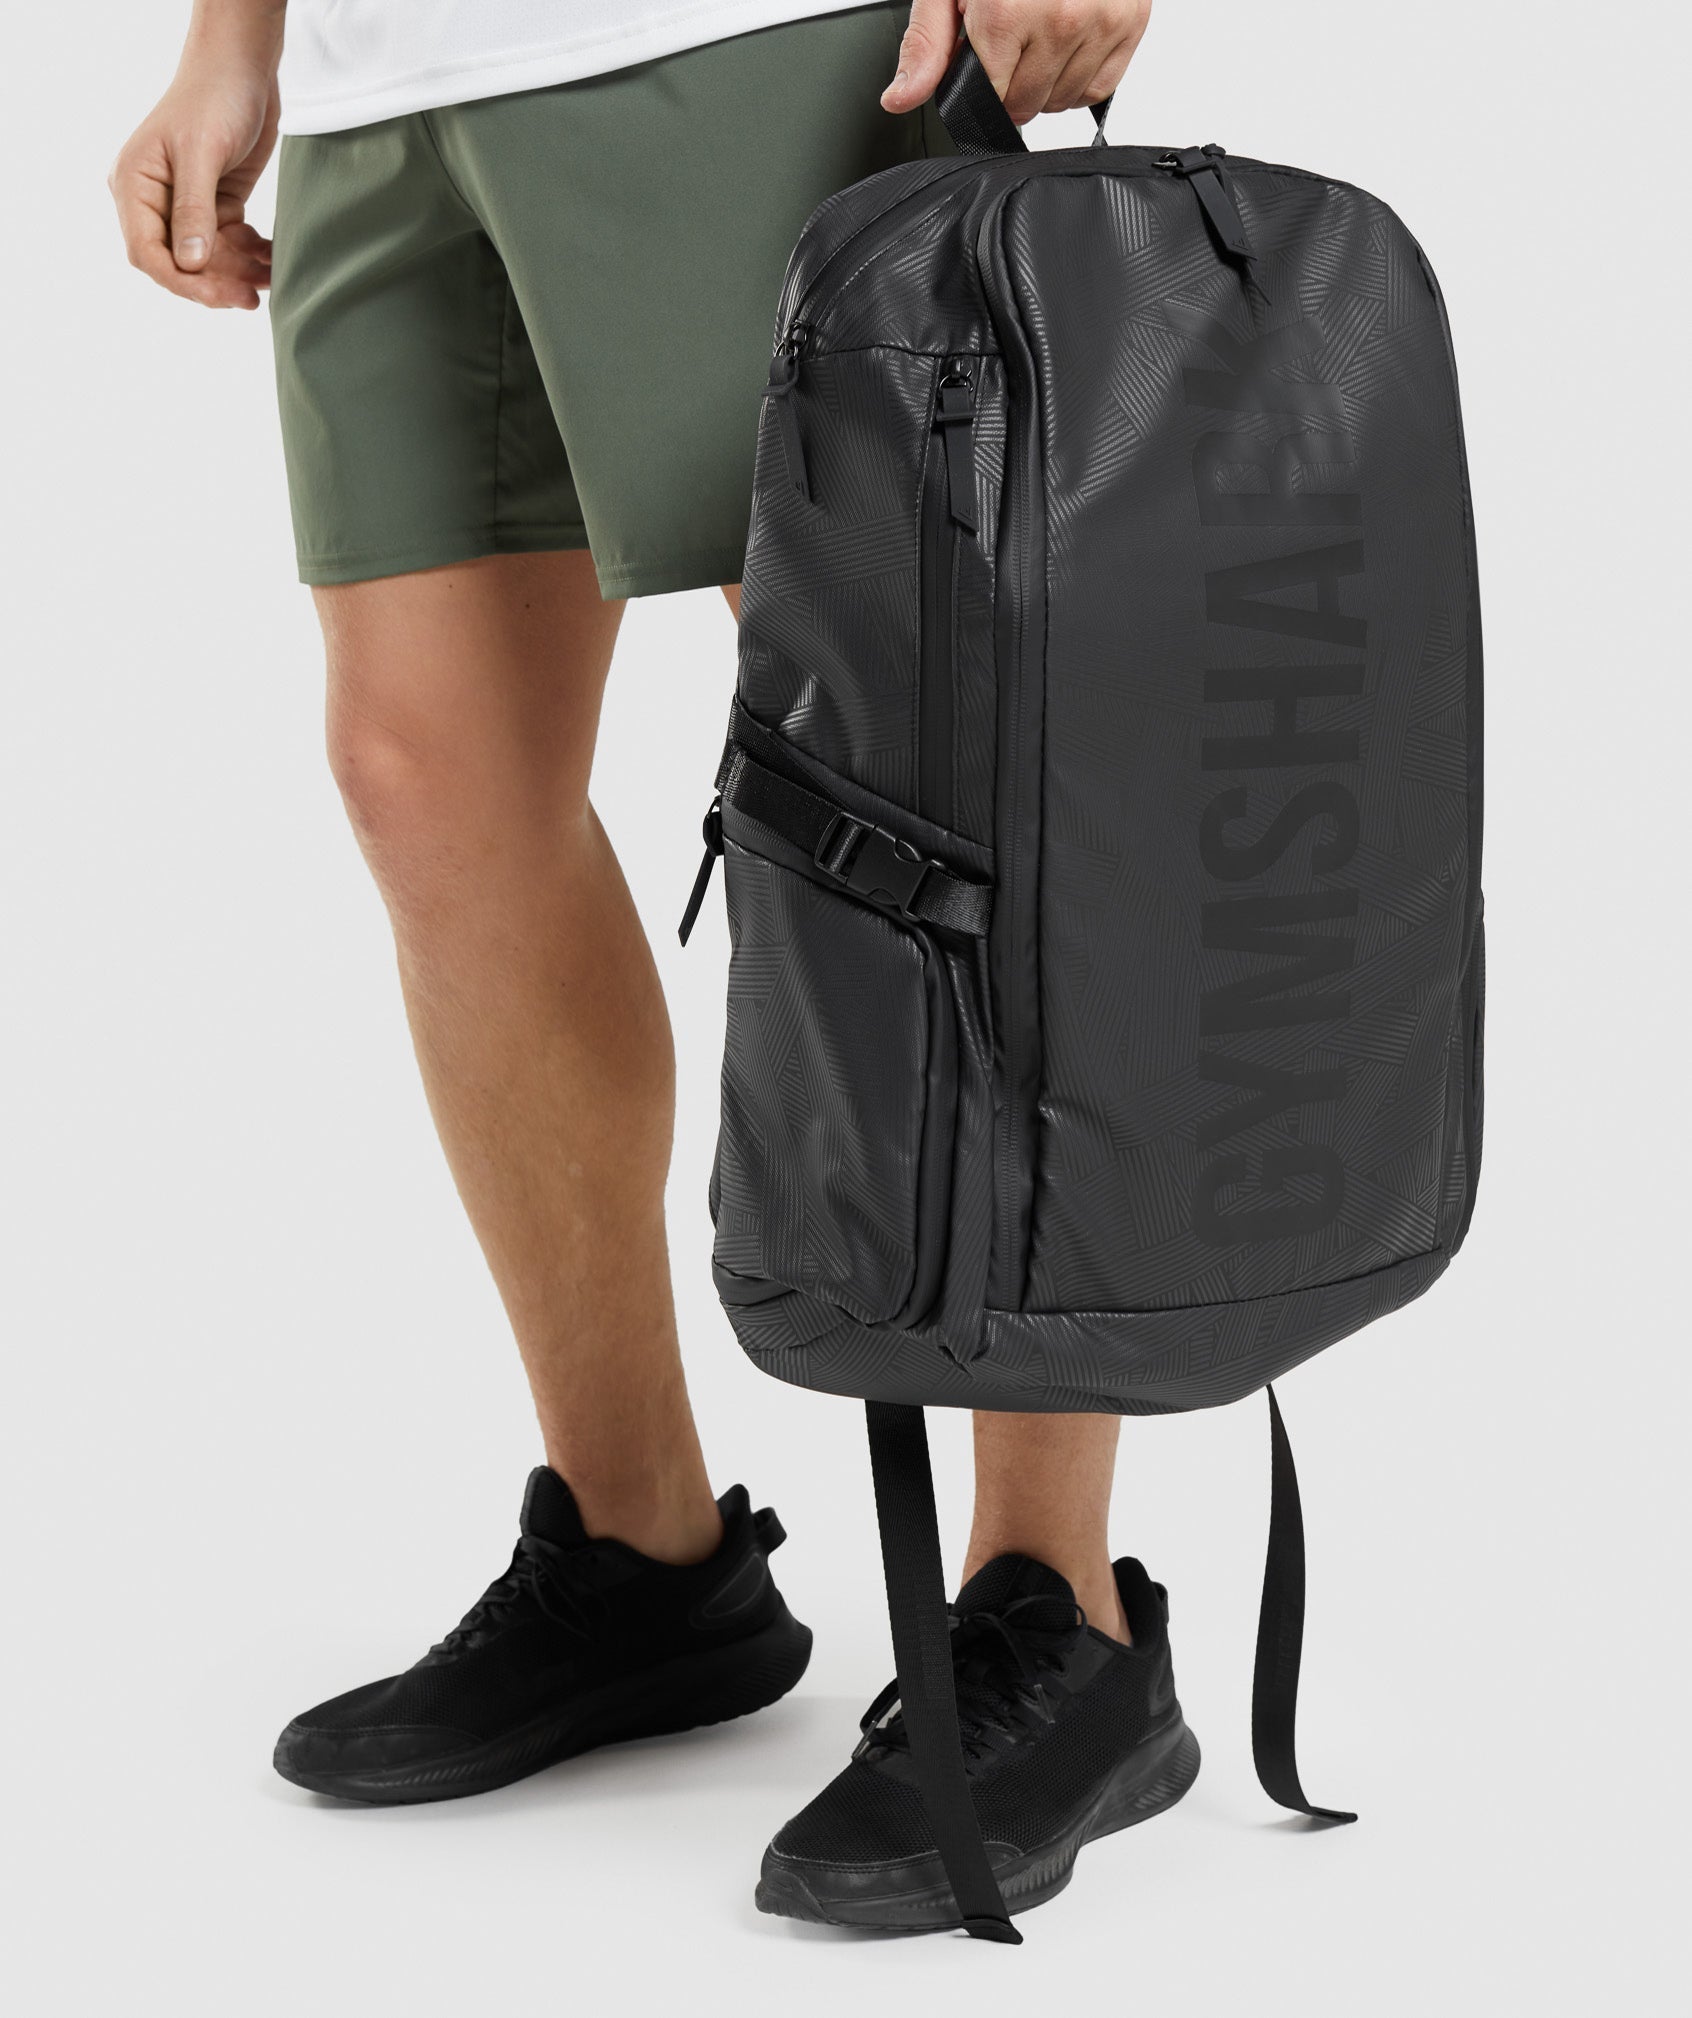 X-Series 0.3 Backpack in Black Print - view 2